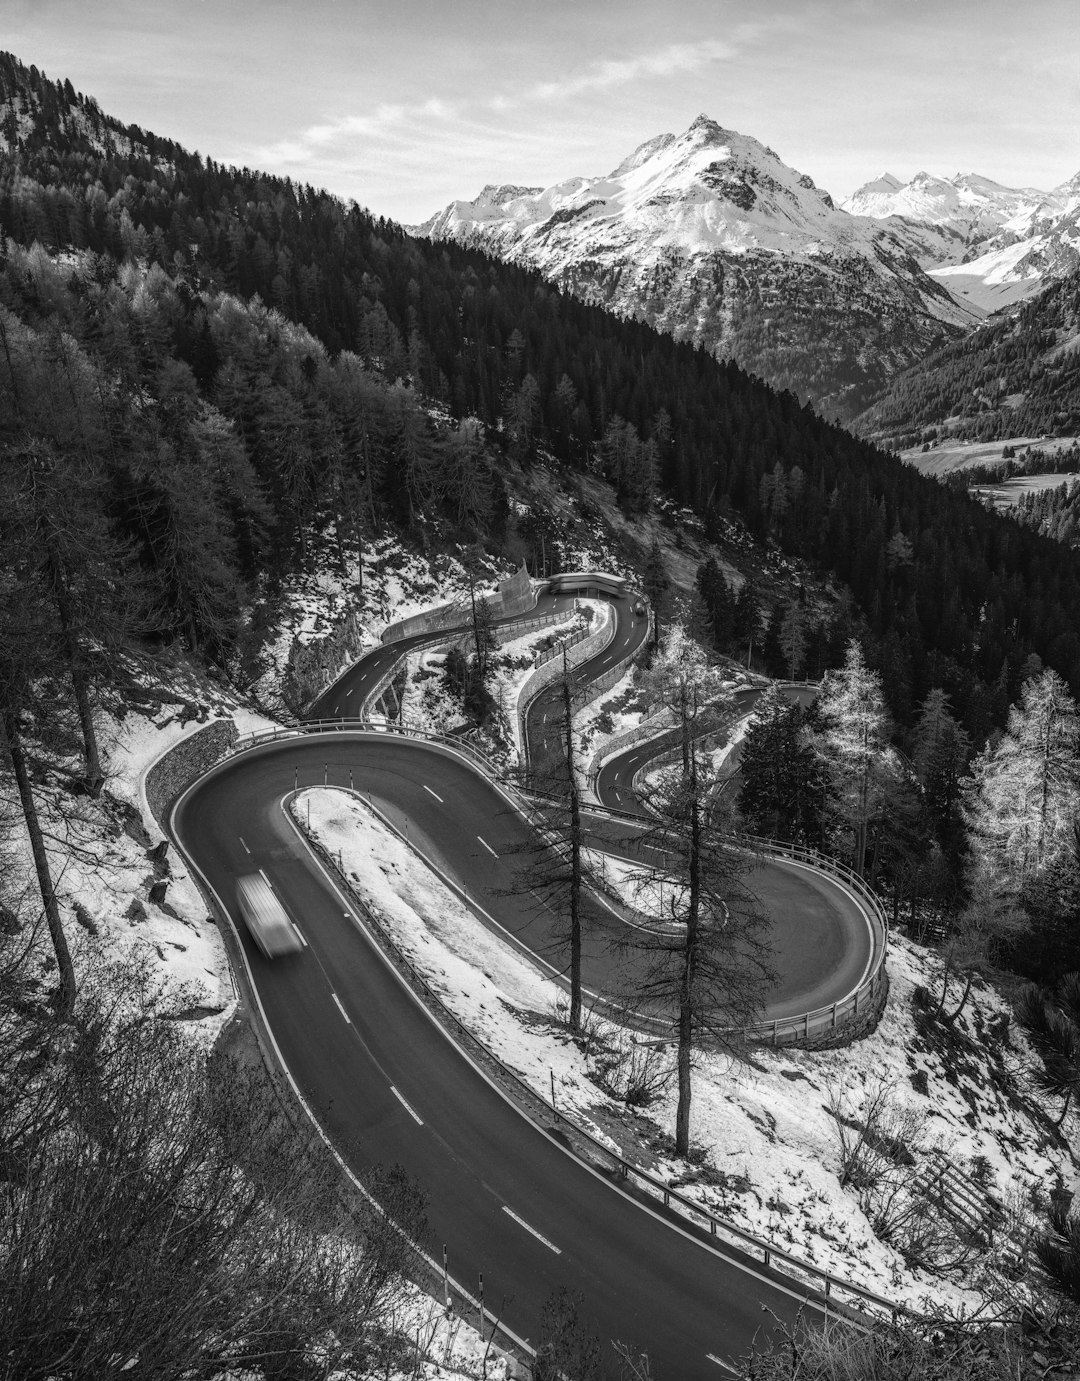 Travel Tips and Stories of Maloja Pass in Switzerland